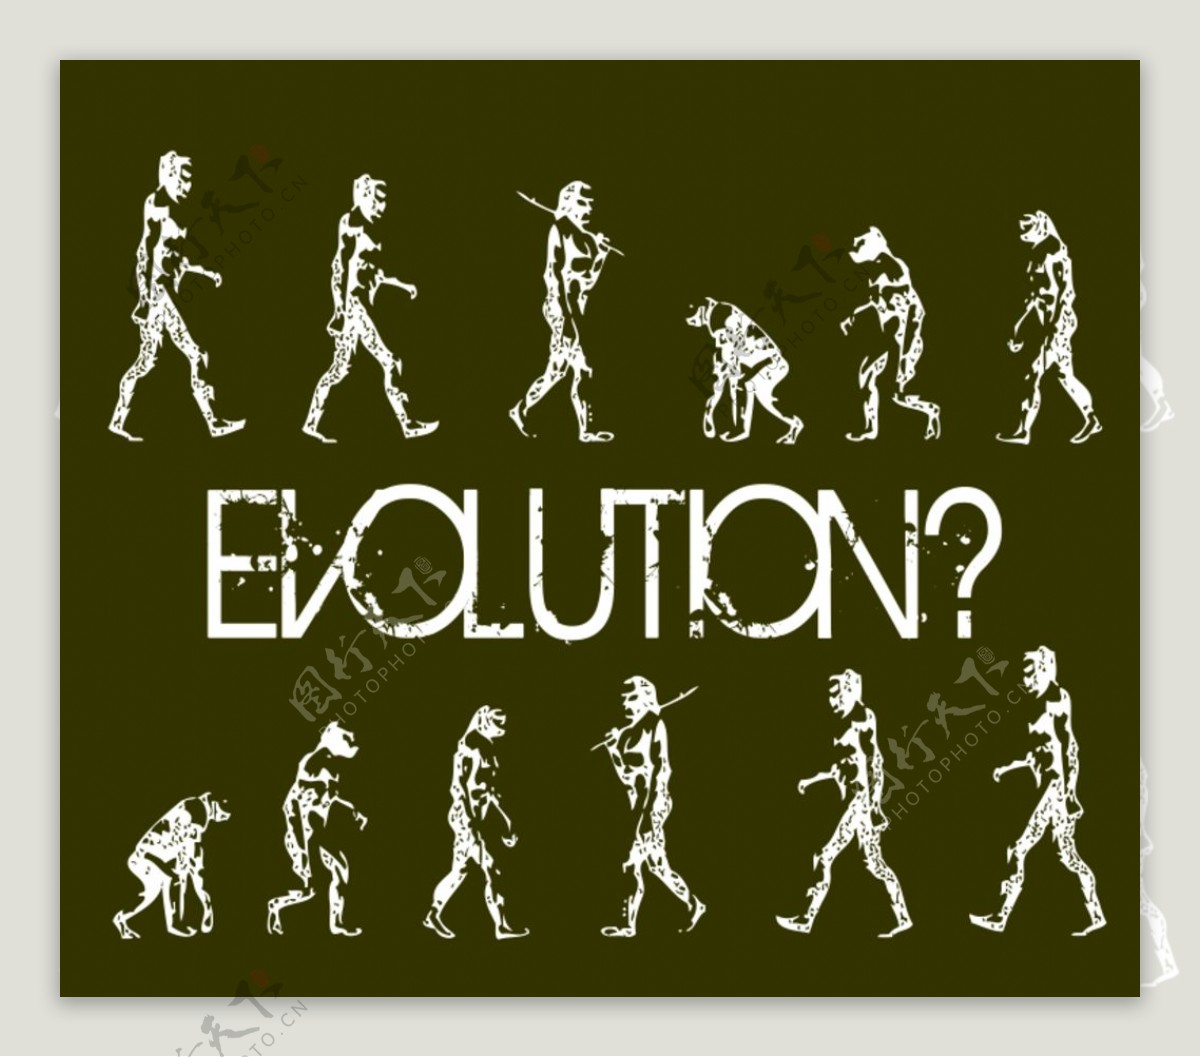 人类进化